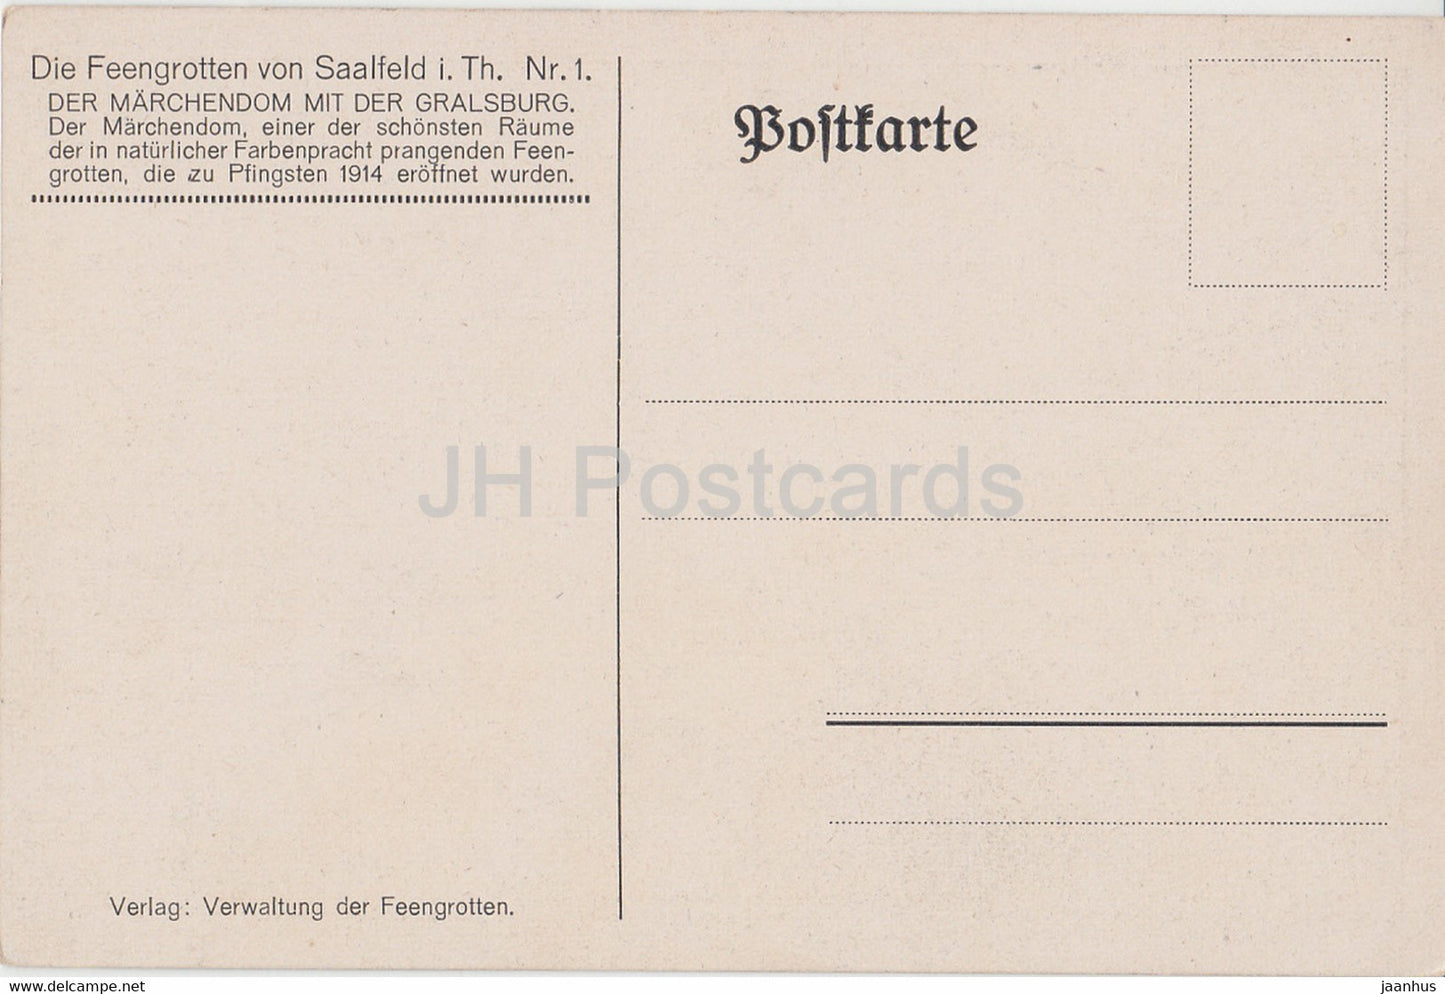 Feengrotten von Saalfeld in Th - Marchendom - grotte - 1 - carte postale ancienne - Allemagne - inutilisée